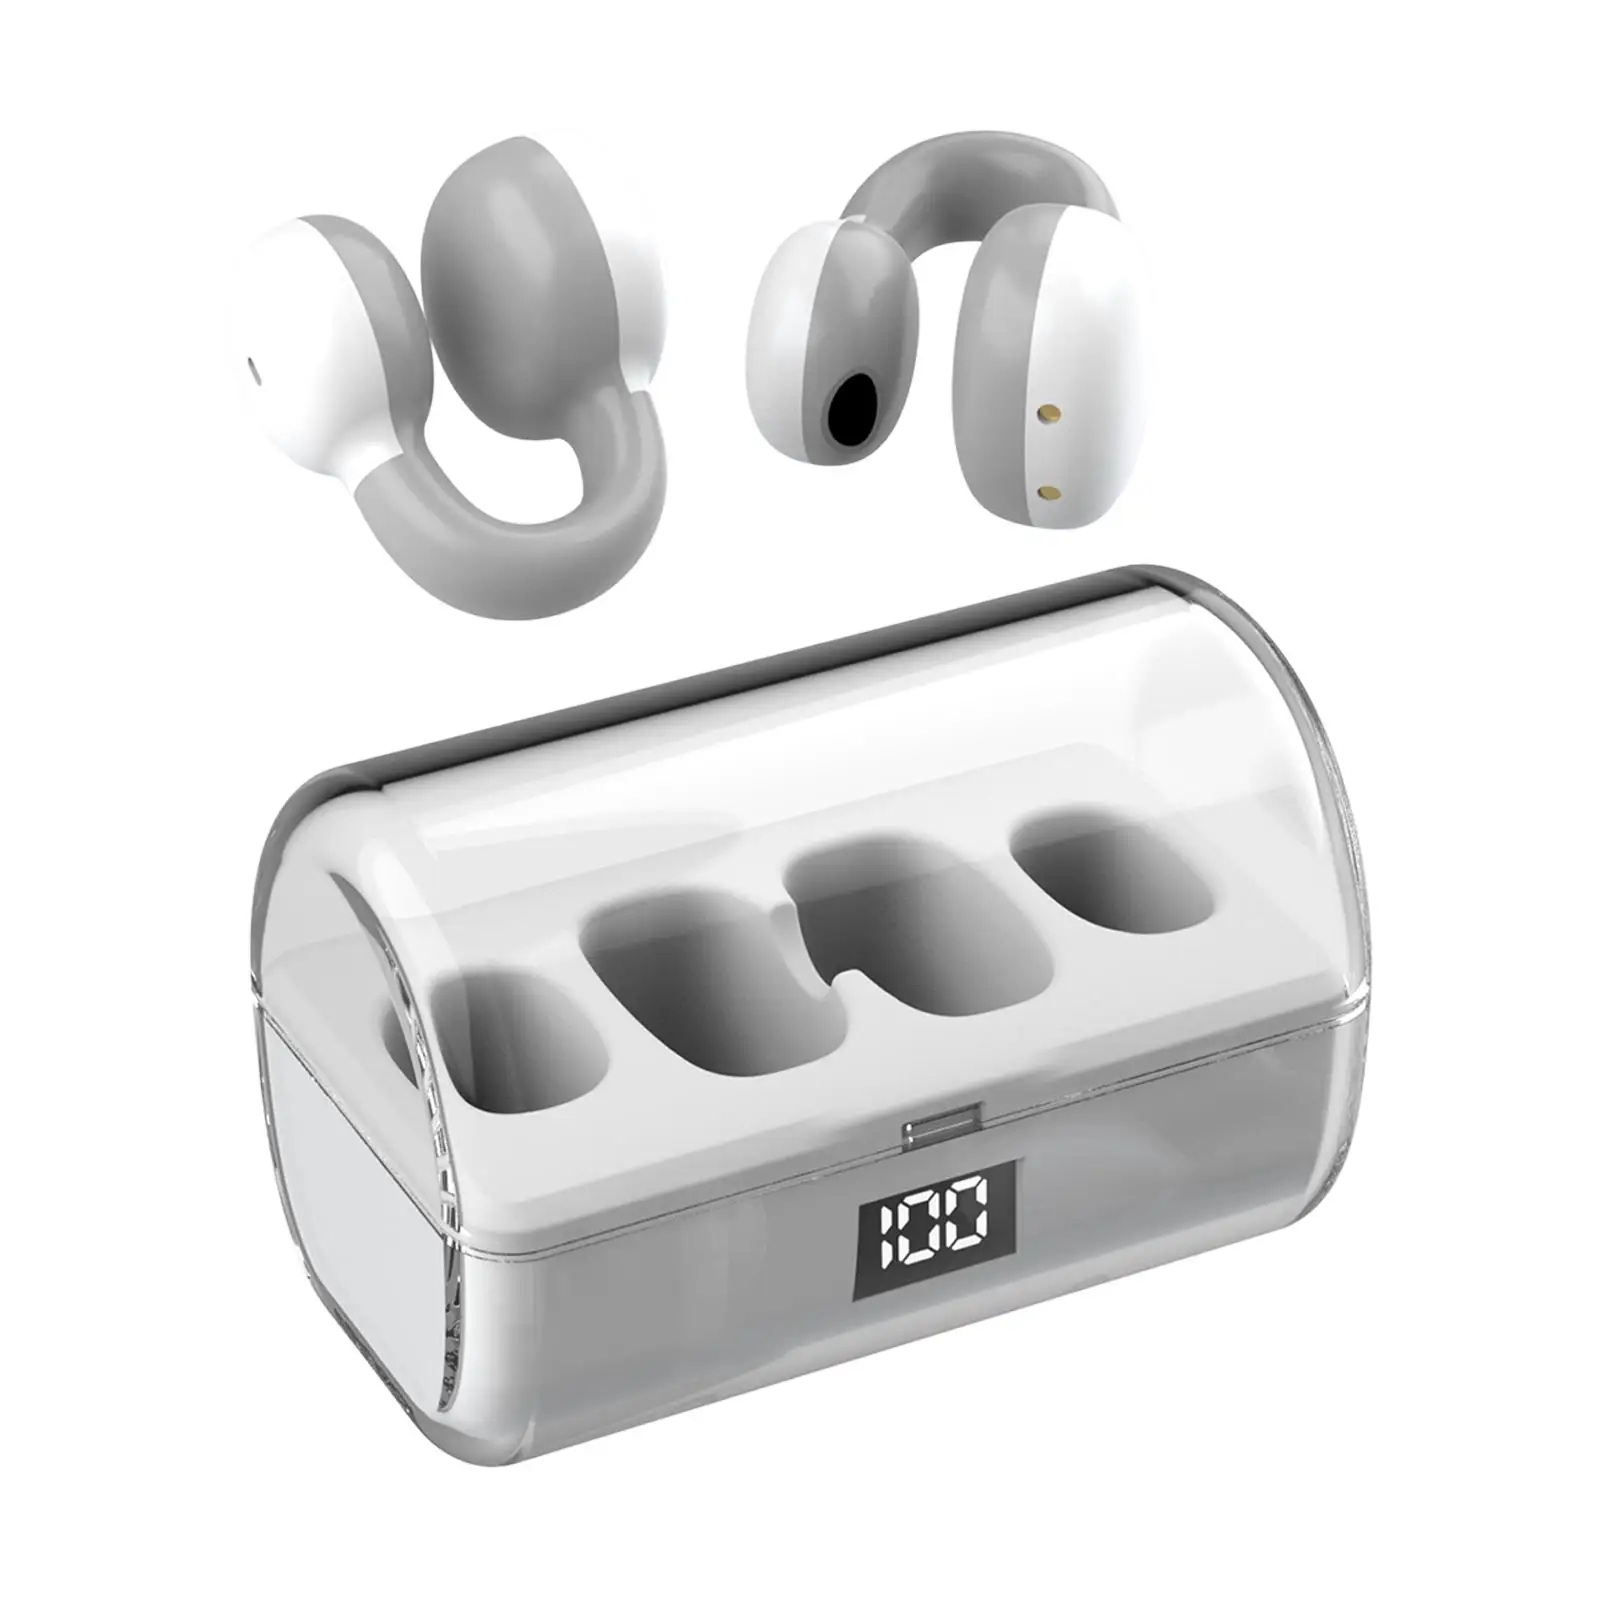 Wireless Ear Clip Headphones Waterproof Hands Free Calling Low Latency HiFi Open Ear Headphones for Cycling Workout Office